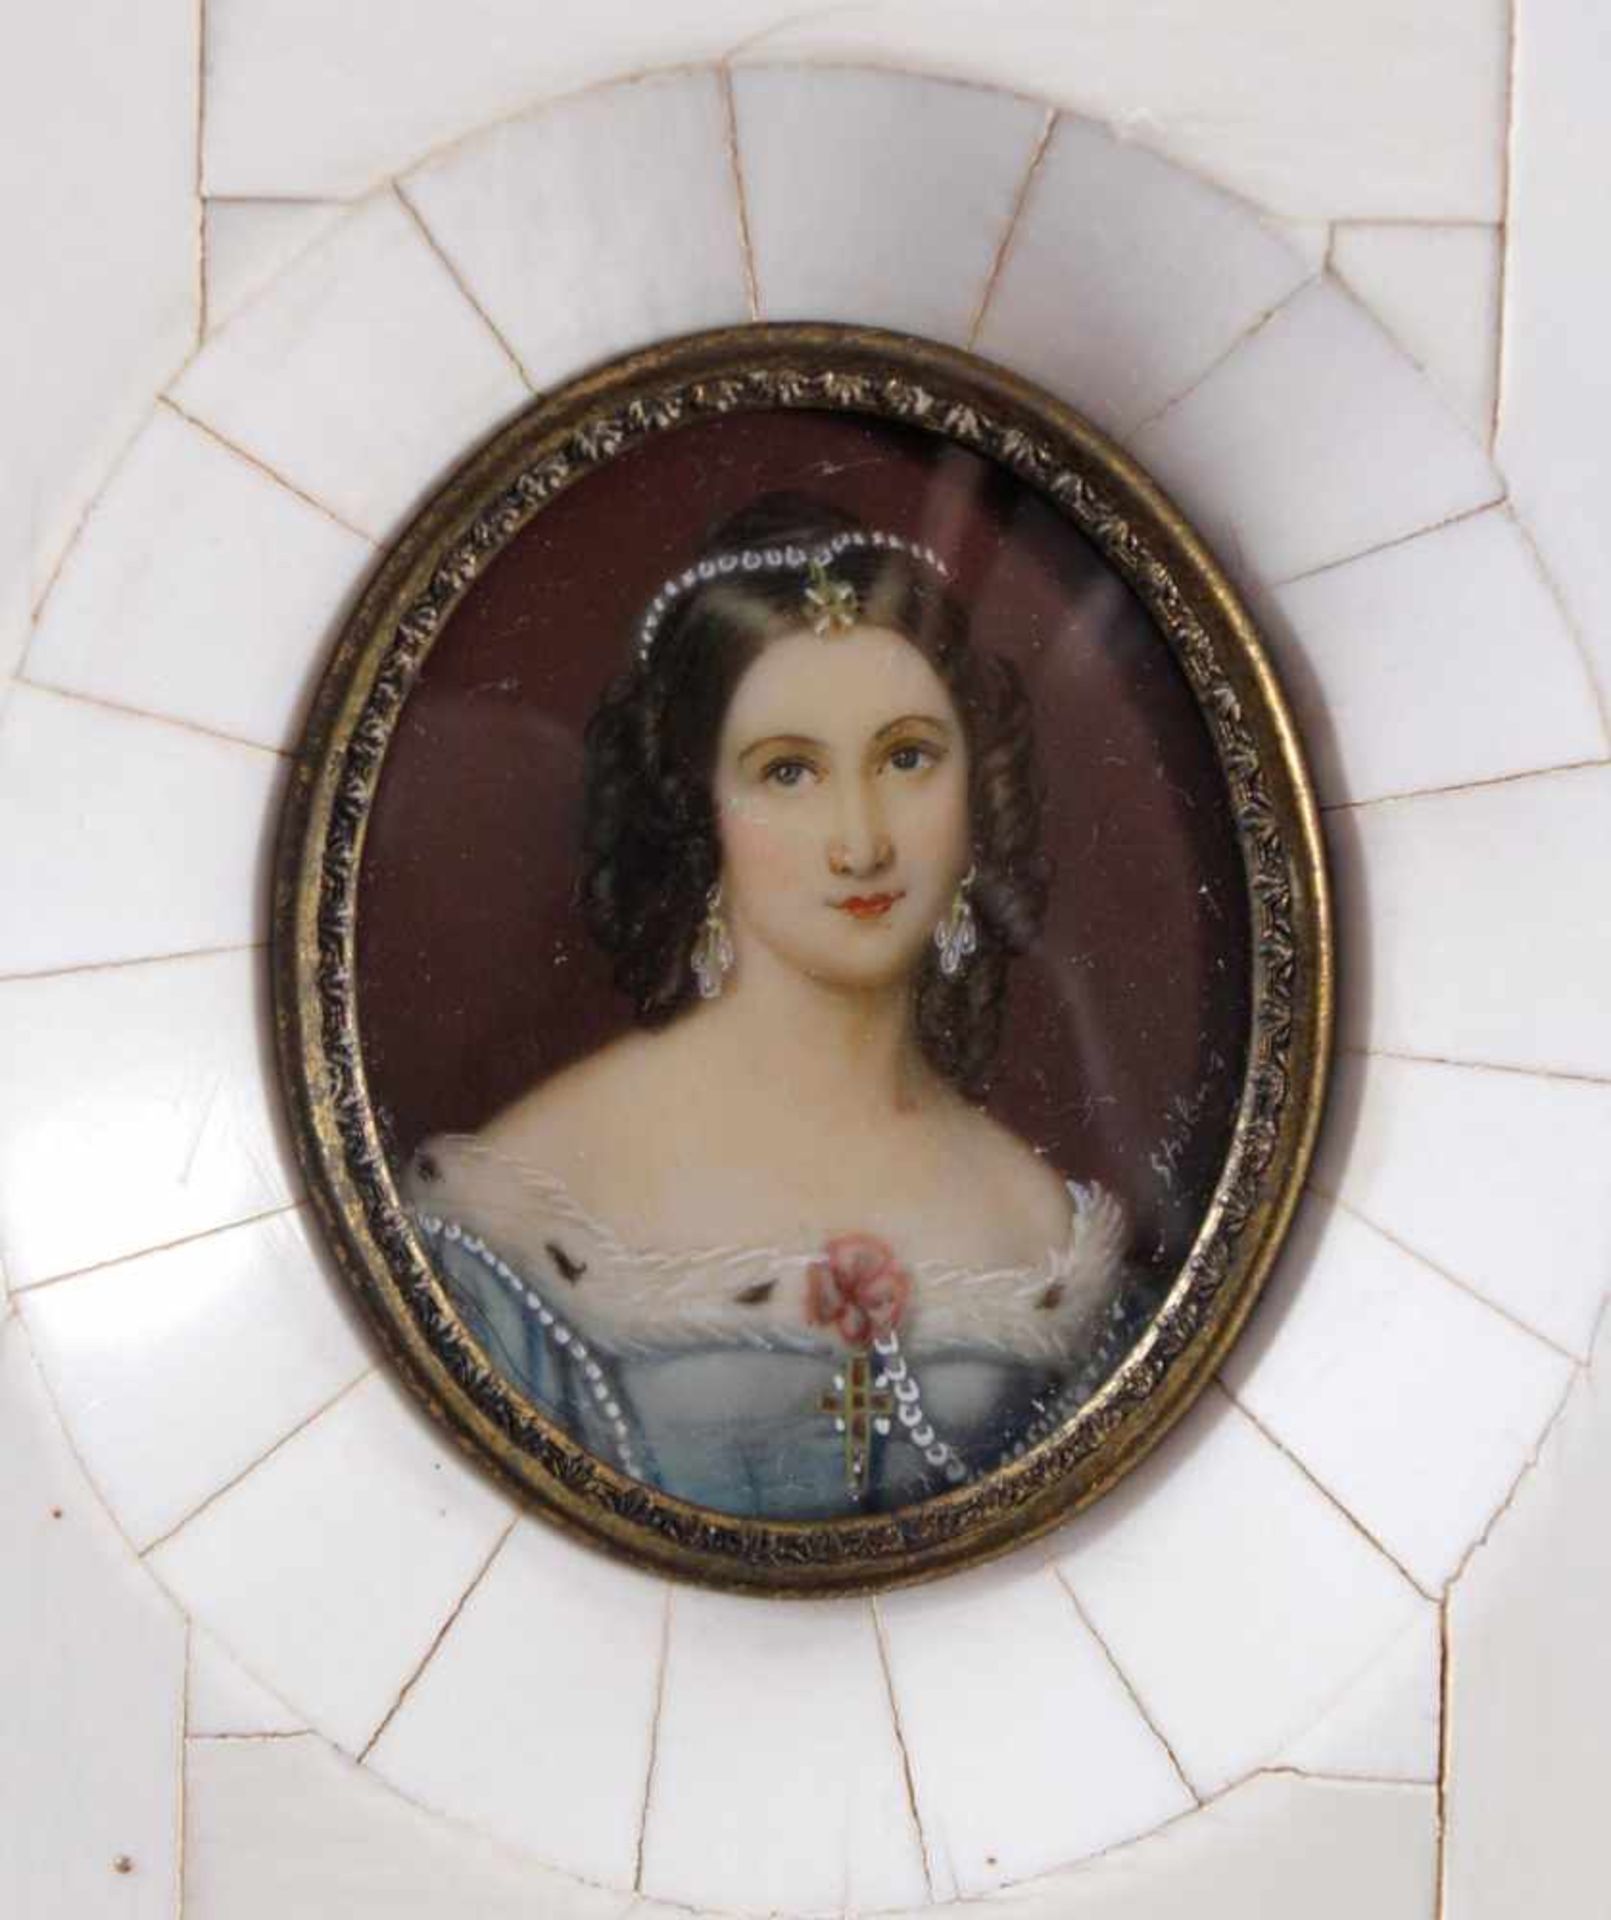 Elfenbein-Miniatur "Charlotte v. Hagn" aus dem 19. Jh.Oval auf Elfenbein gemalt ca. 5 x 4 cm, - Image 2 of 3